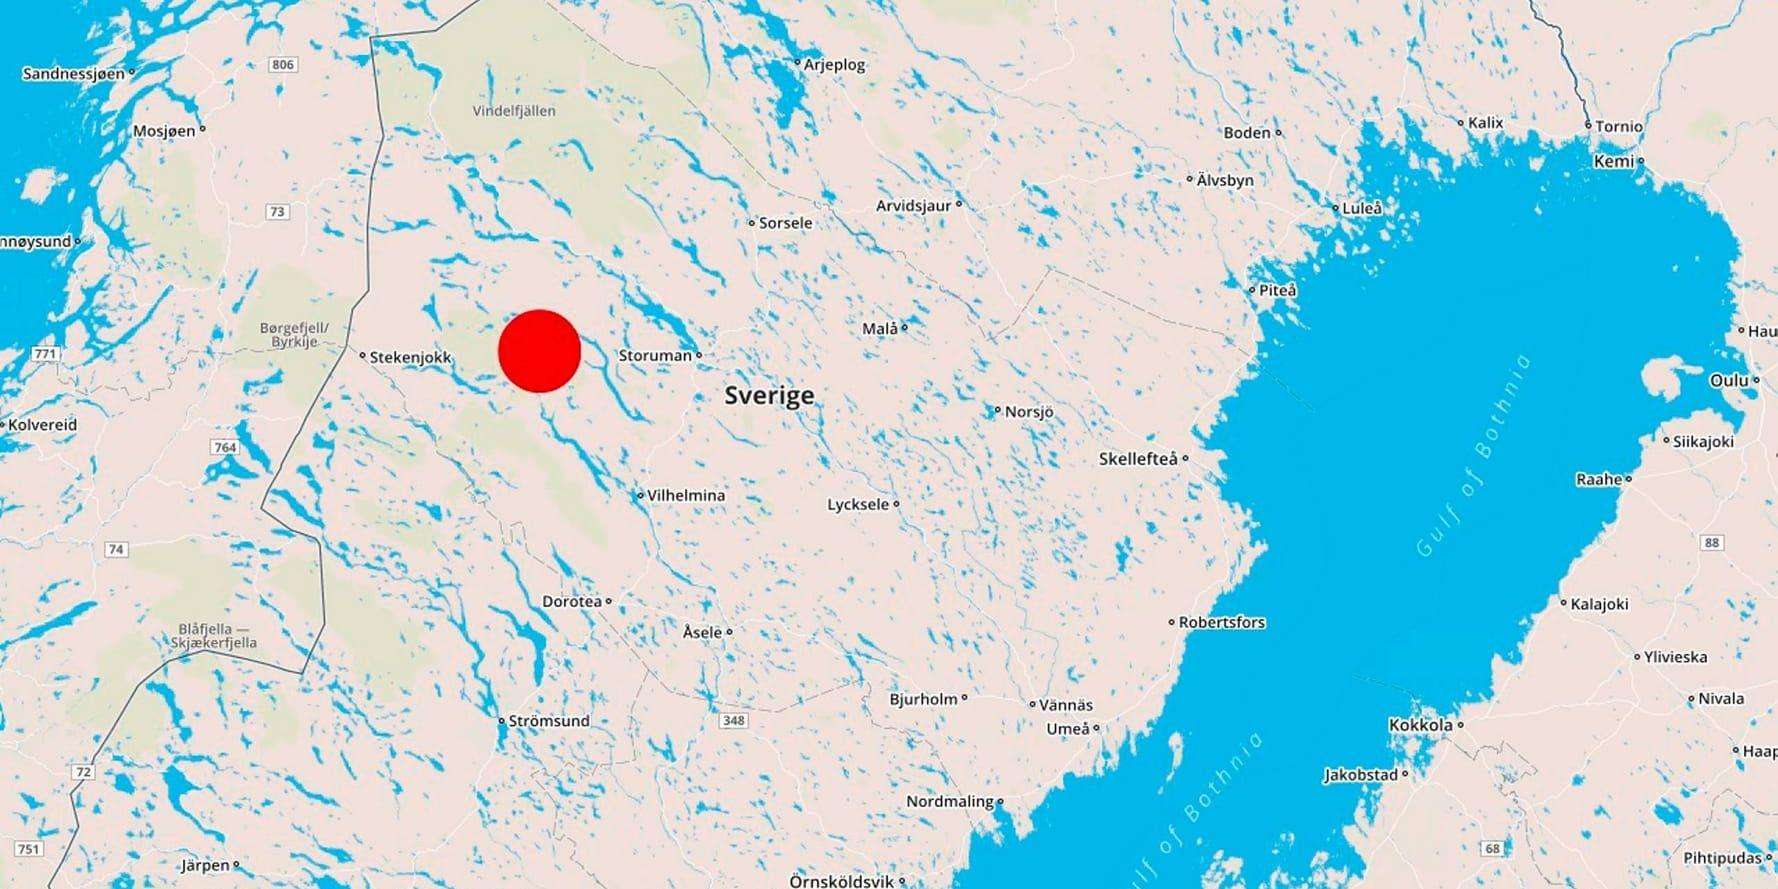 Länsstyrelsen i Västerbotten har godkänt skyddsjakt på två vargar, som börjat revirmarkera i områden nära fjällen i Dikanäsområdet. Jakten får bedrivas fram till den 21 december, men beslutet har redan överklagats, enligt lokala medier.